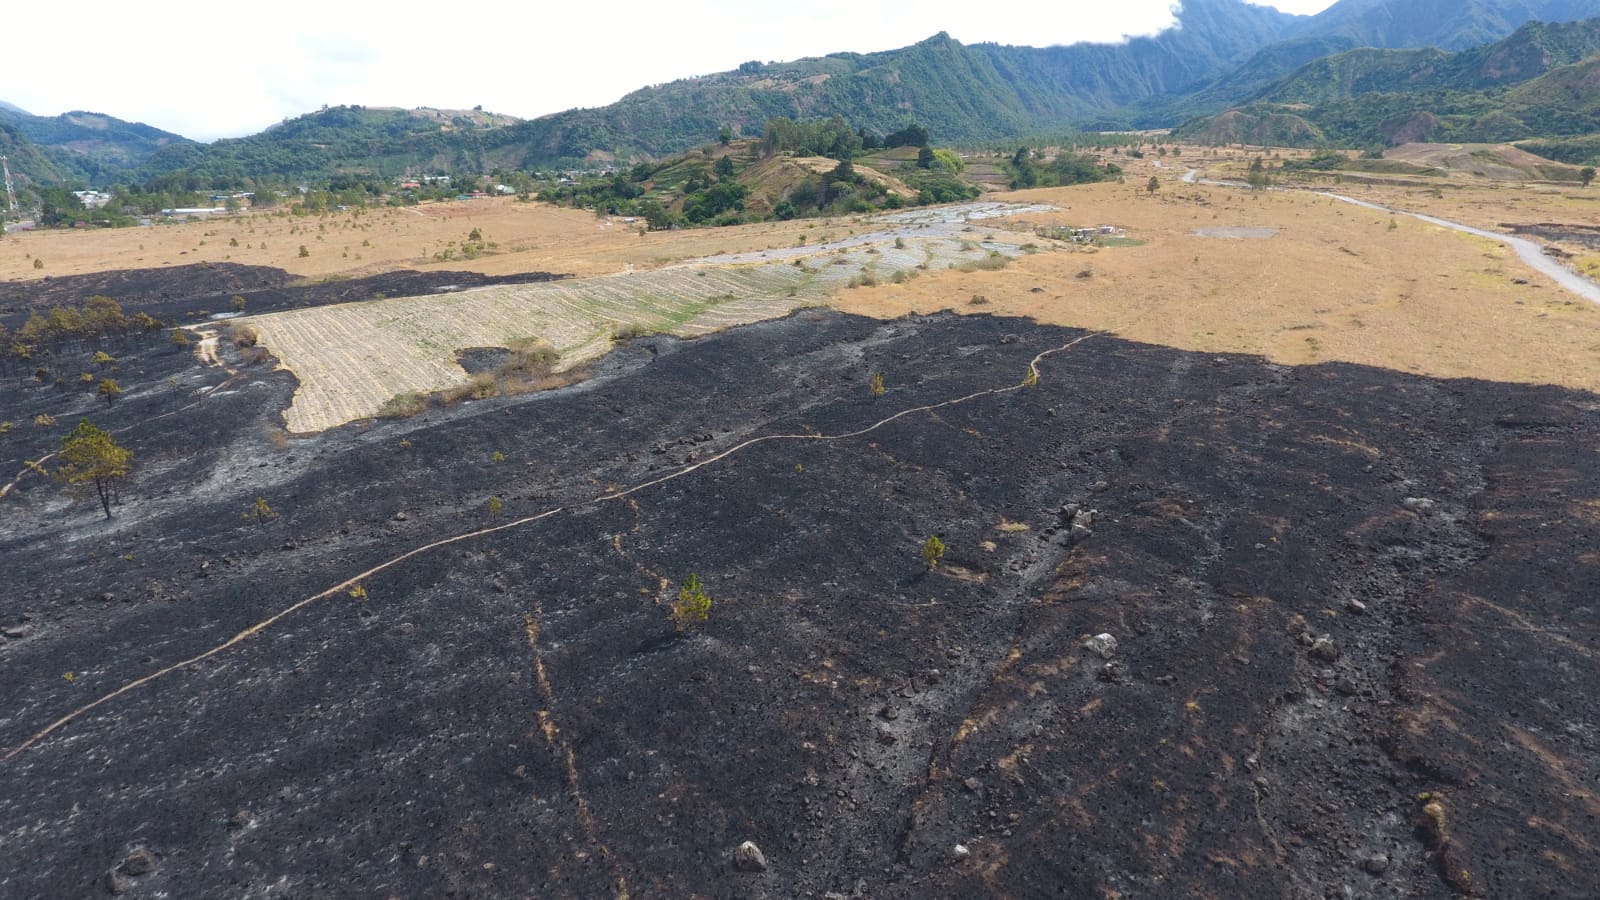 Incendio de masa vegetal afectó 11 hectáreas en el Parque Nacional Volcán Barú